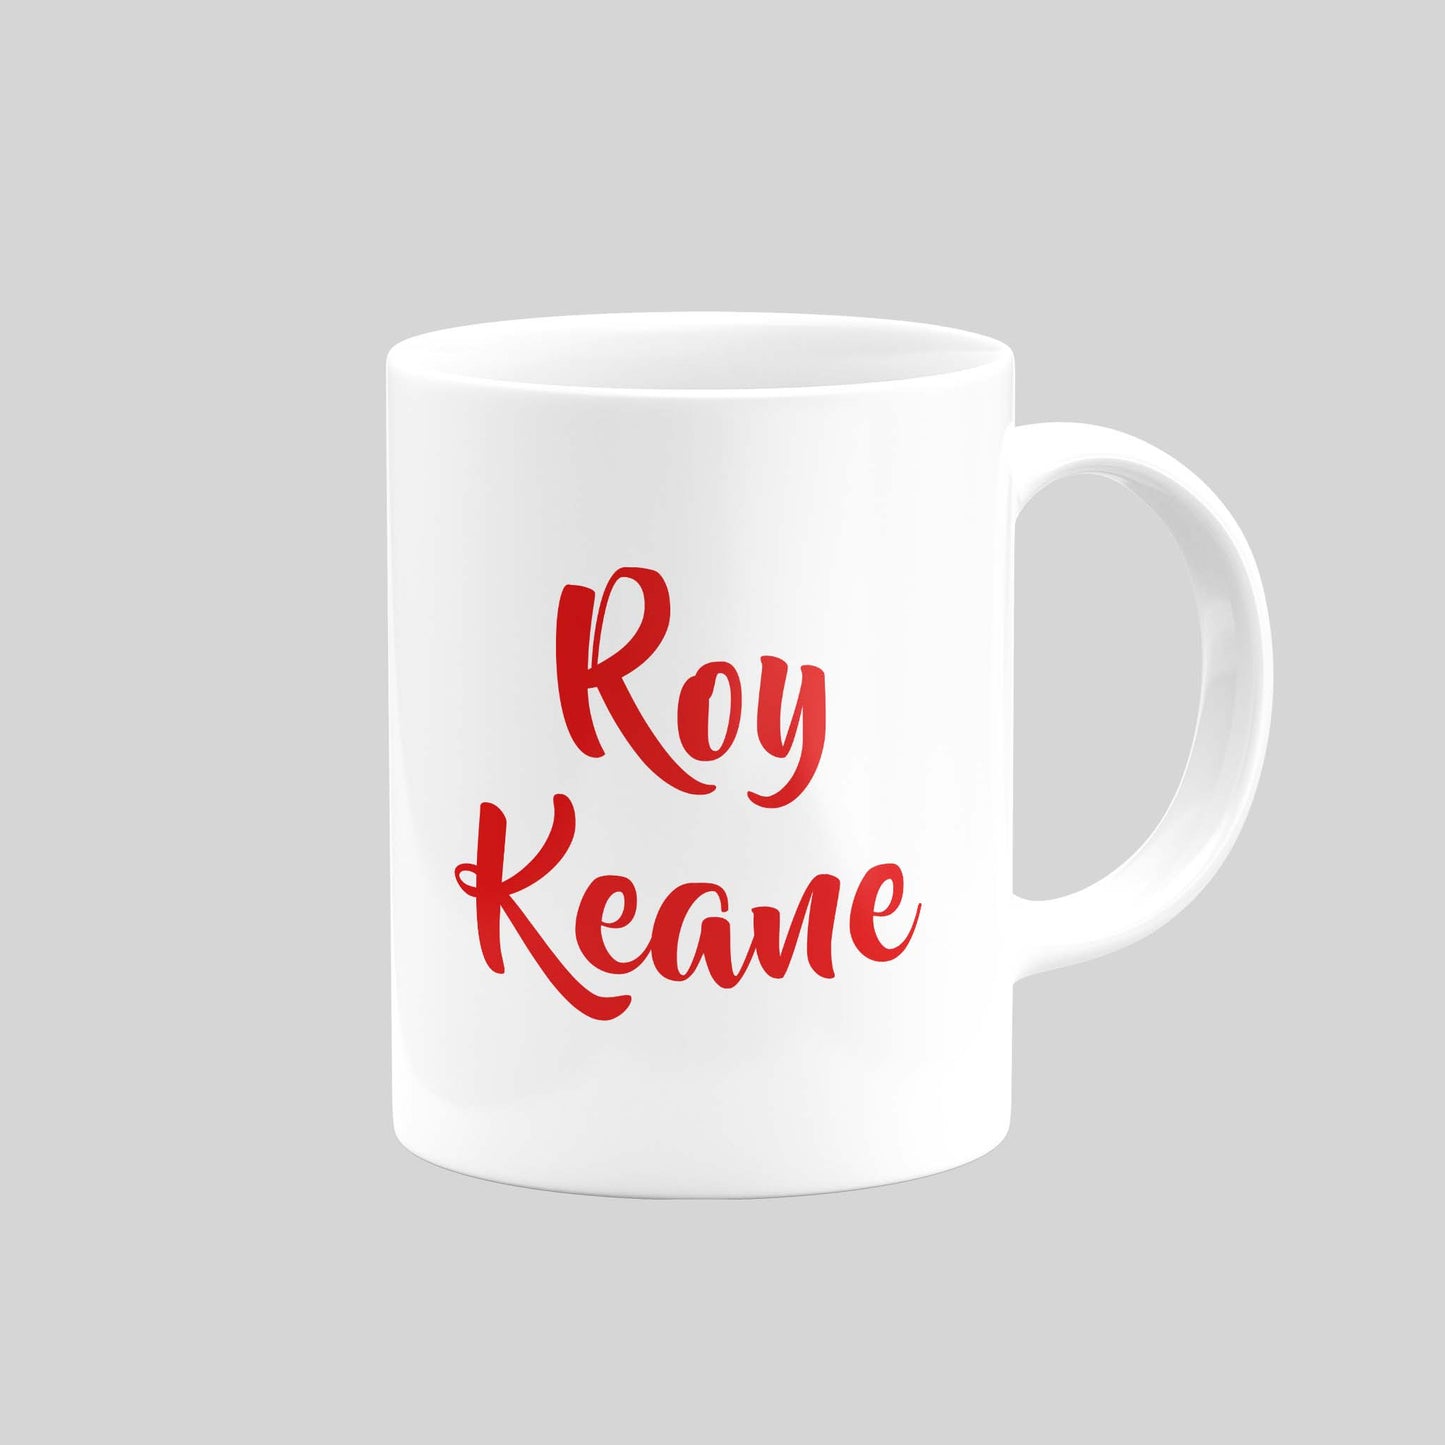 Roy Keane Mug